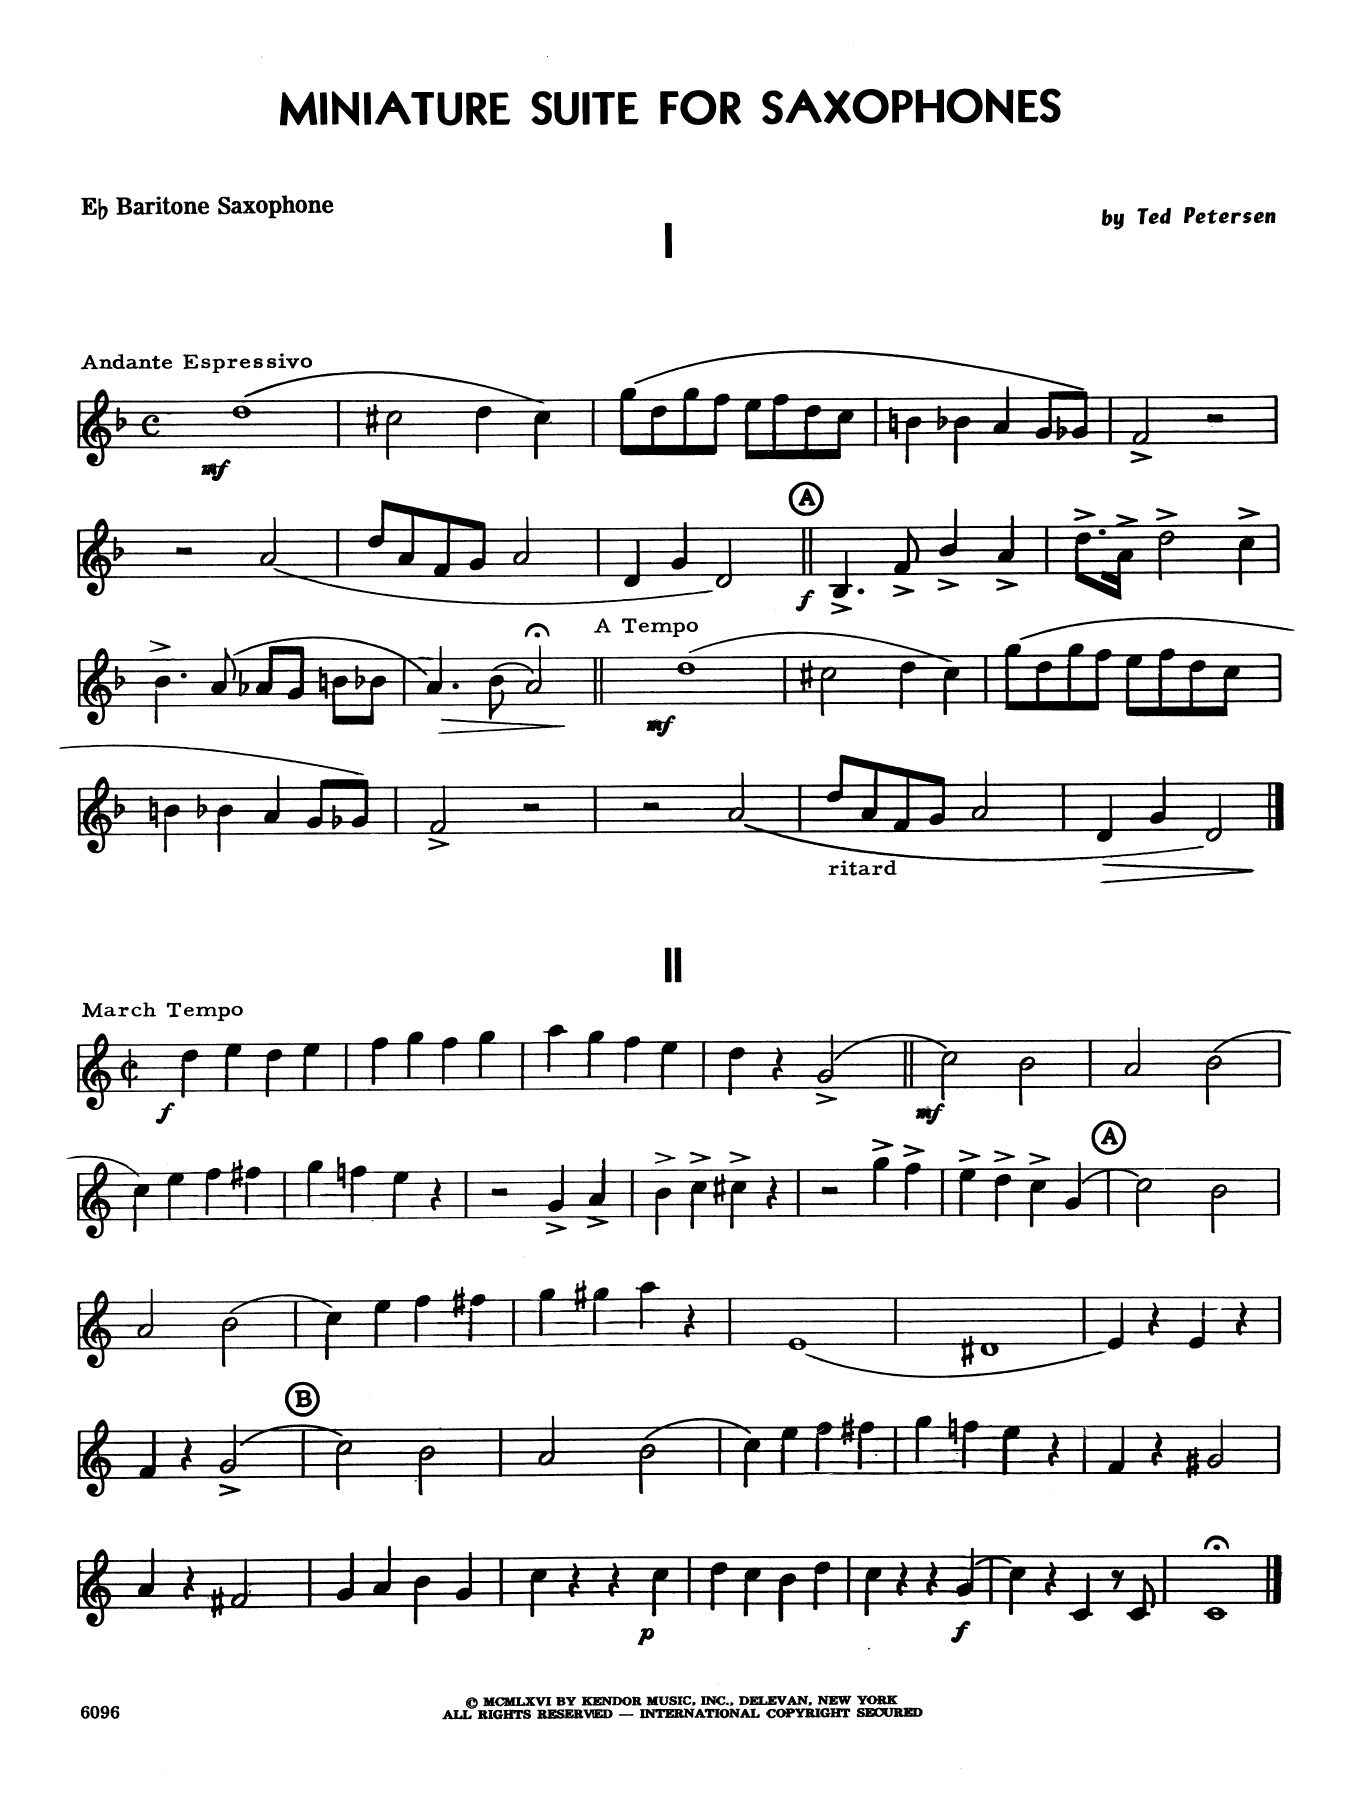 Miniature Suite for Saxophones - Eb Baritone Saxophone (Woodwind Ensemble) von Ted Petersen